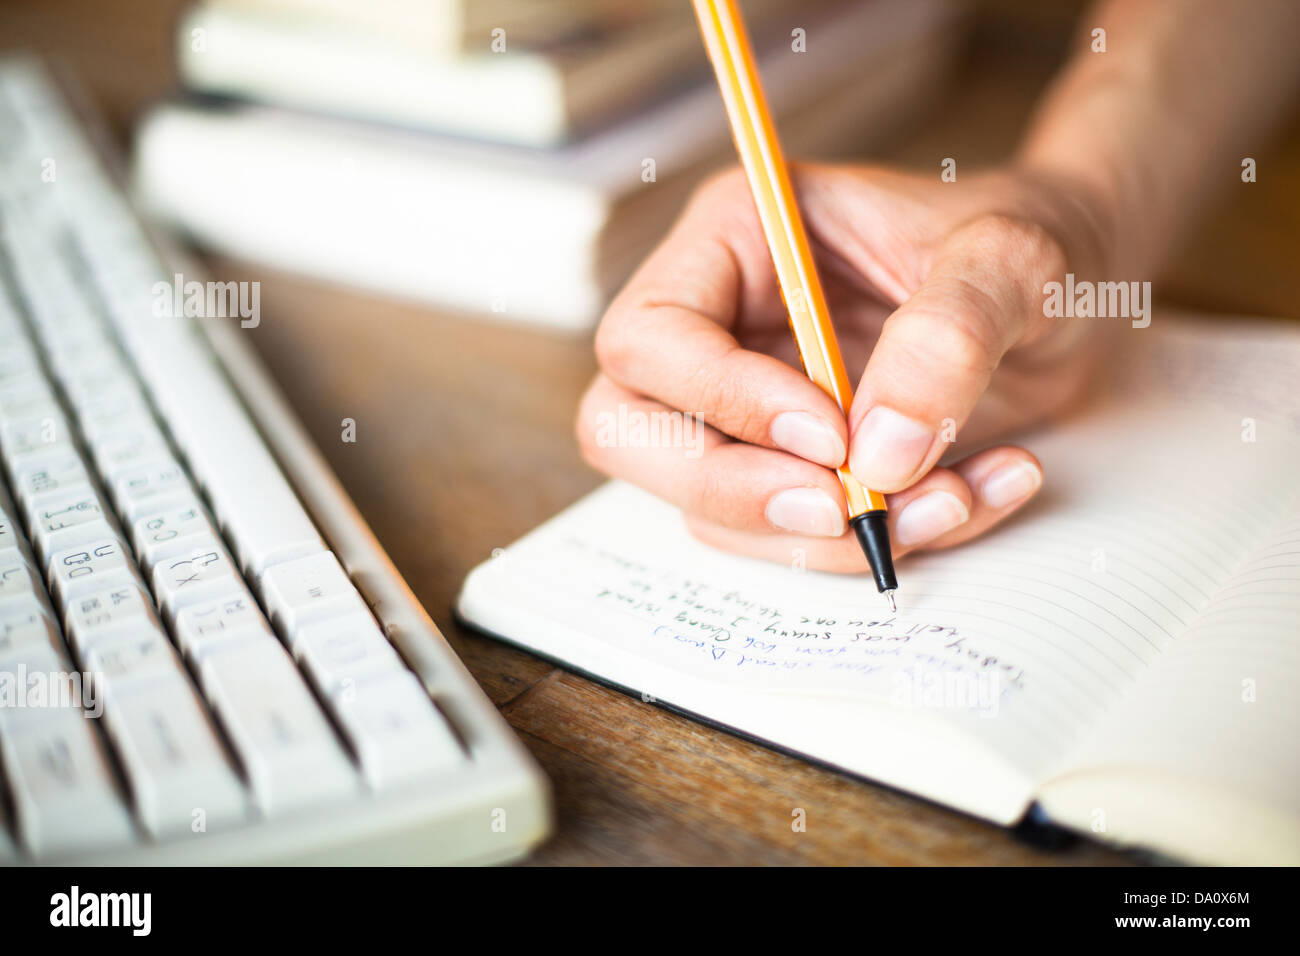 Frau Hände schreibt einen Stift in einem Notebook, Computer-Tastatur im Hintergrund. Stockfoto